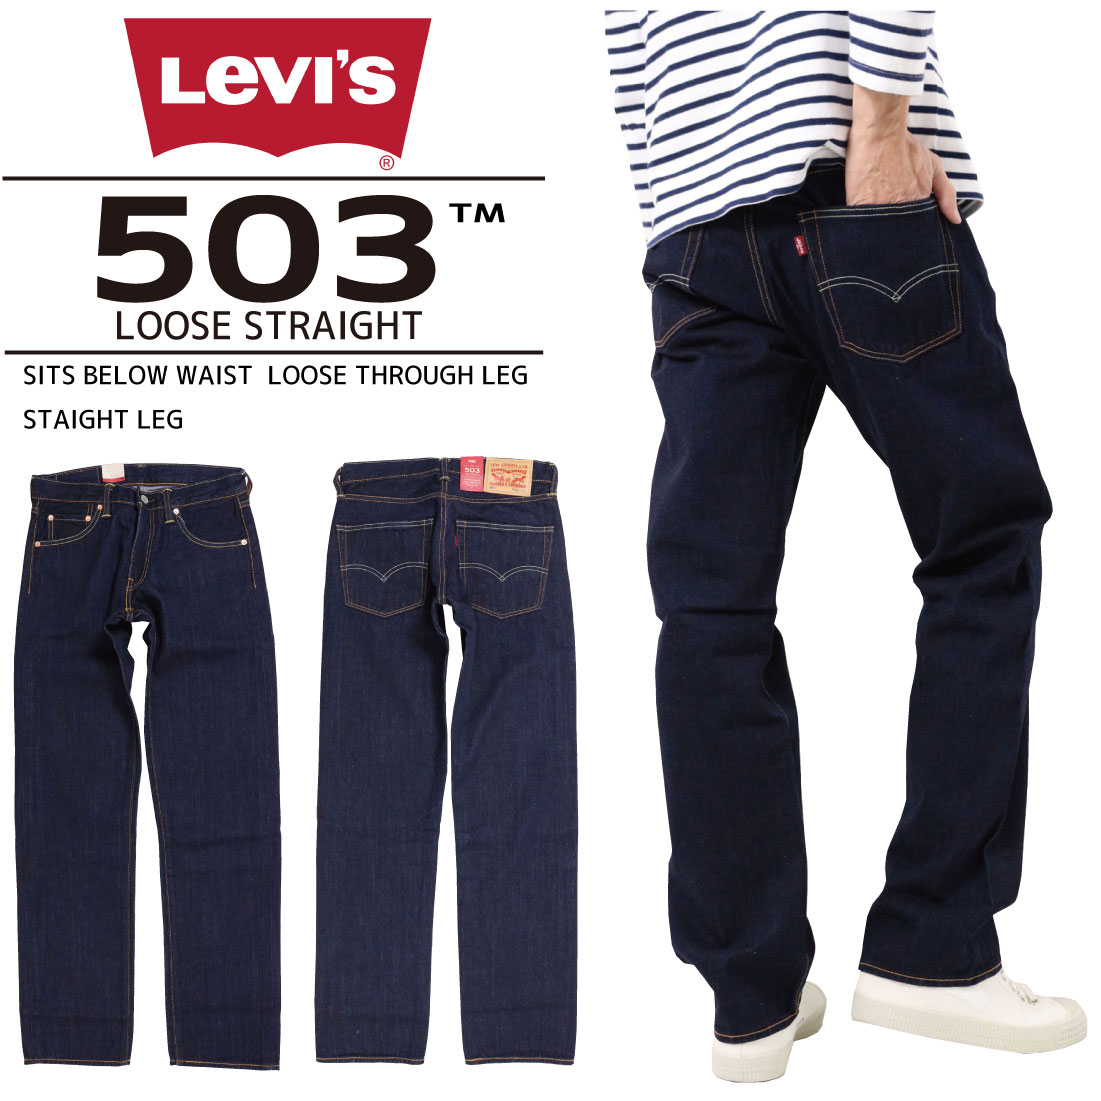 levis 503